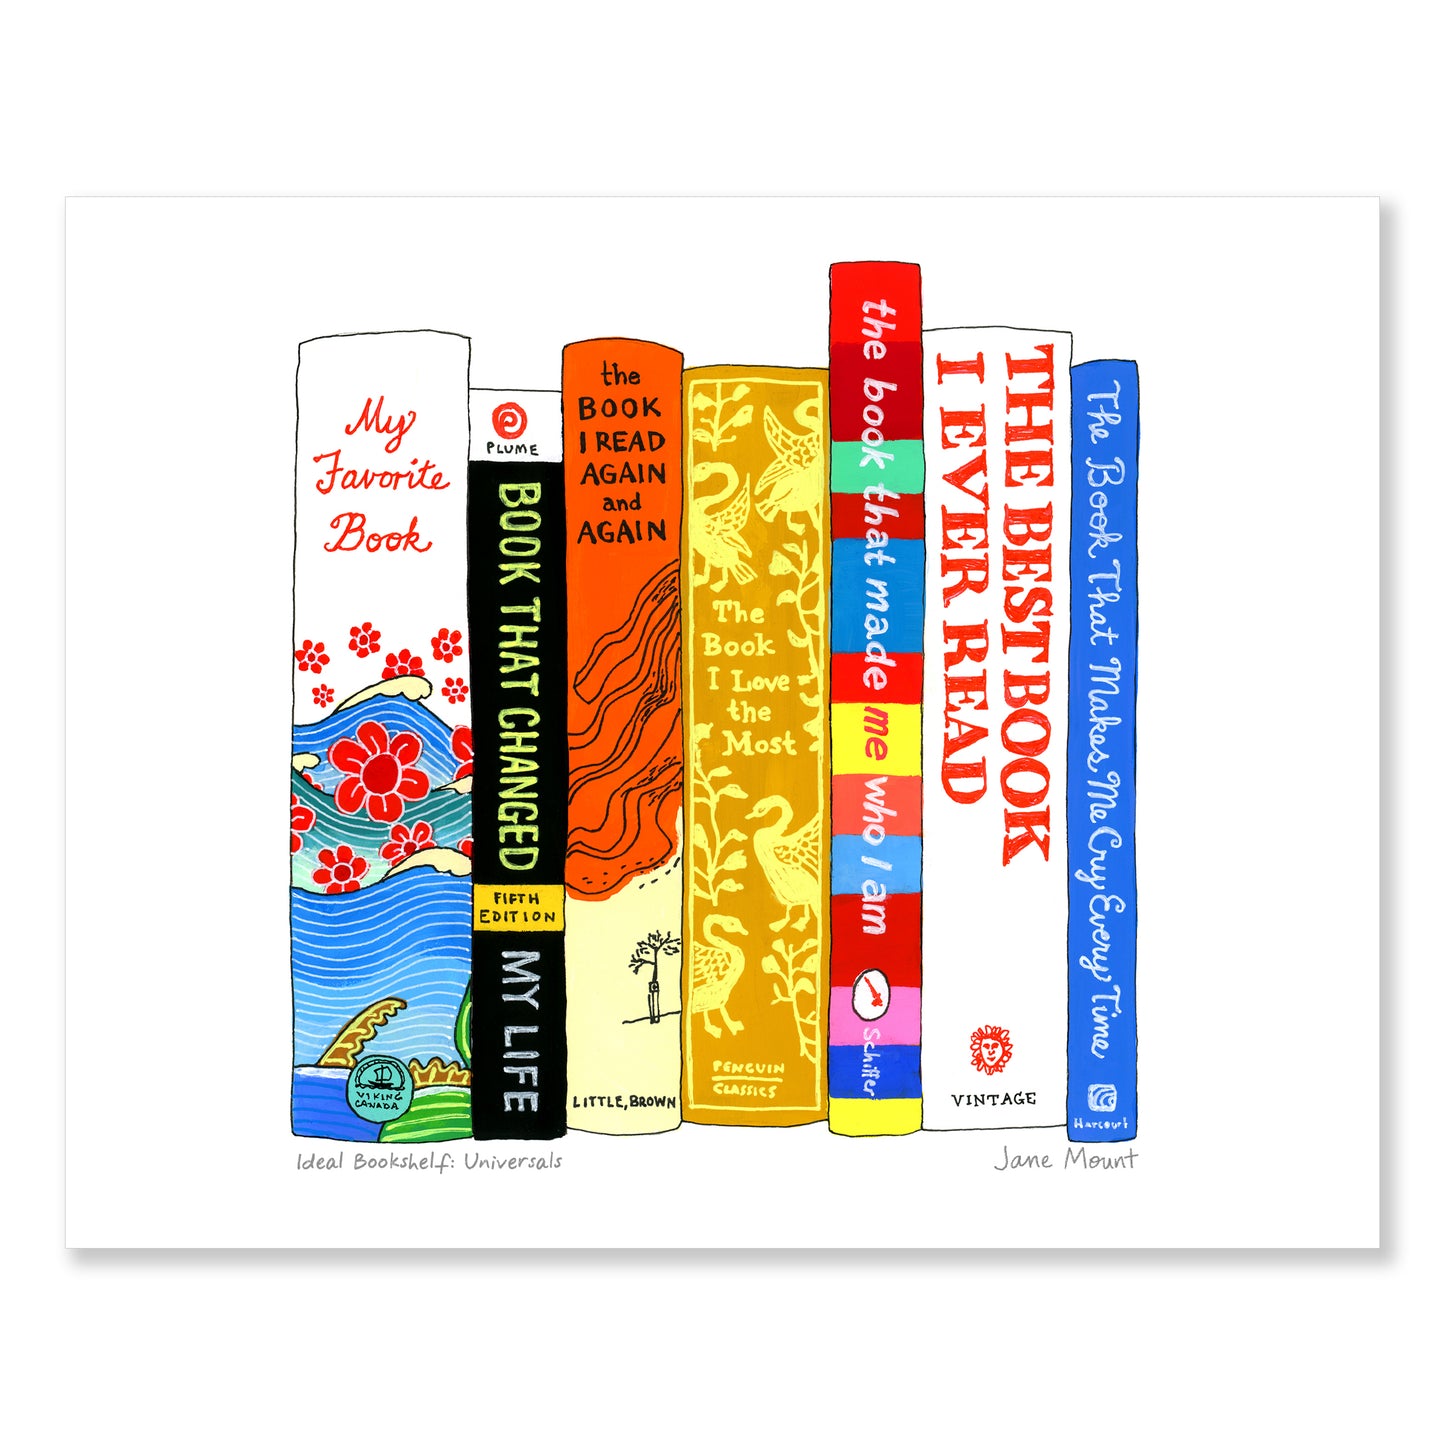 Ideal Bookshelf: Universals